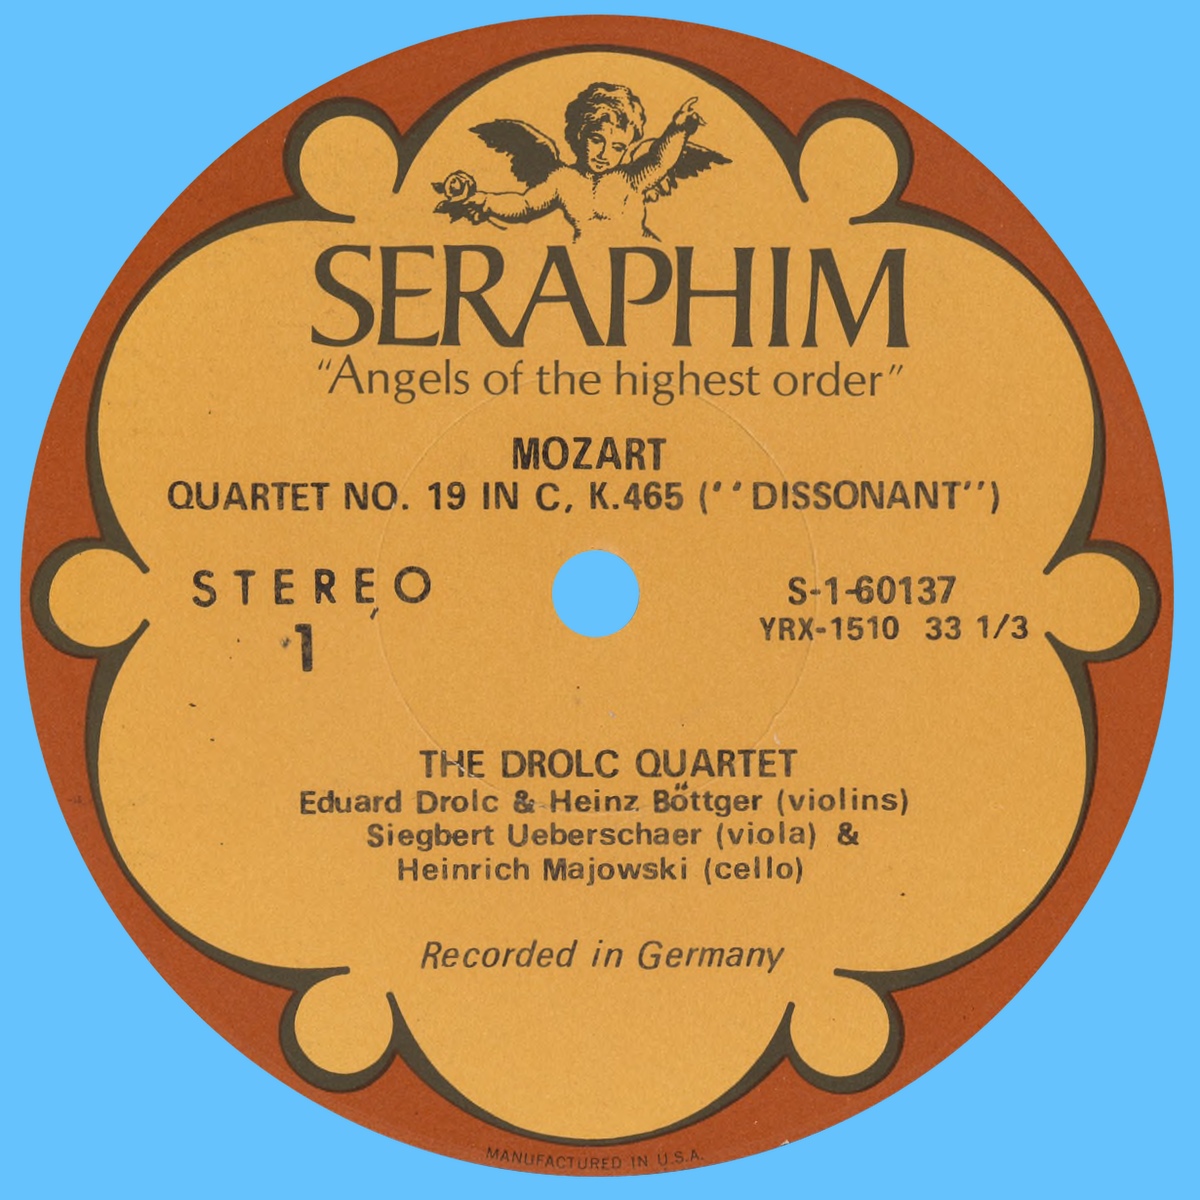 Étiquette recto du disque Seraphim S 60137